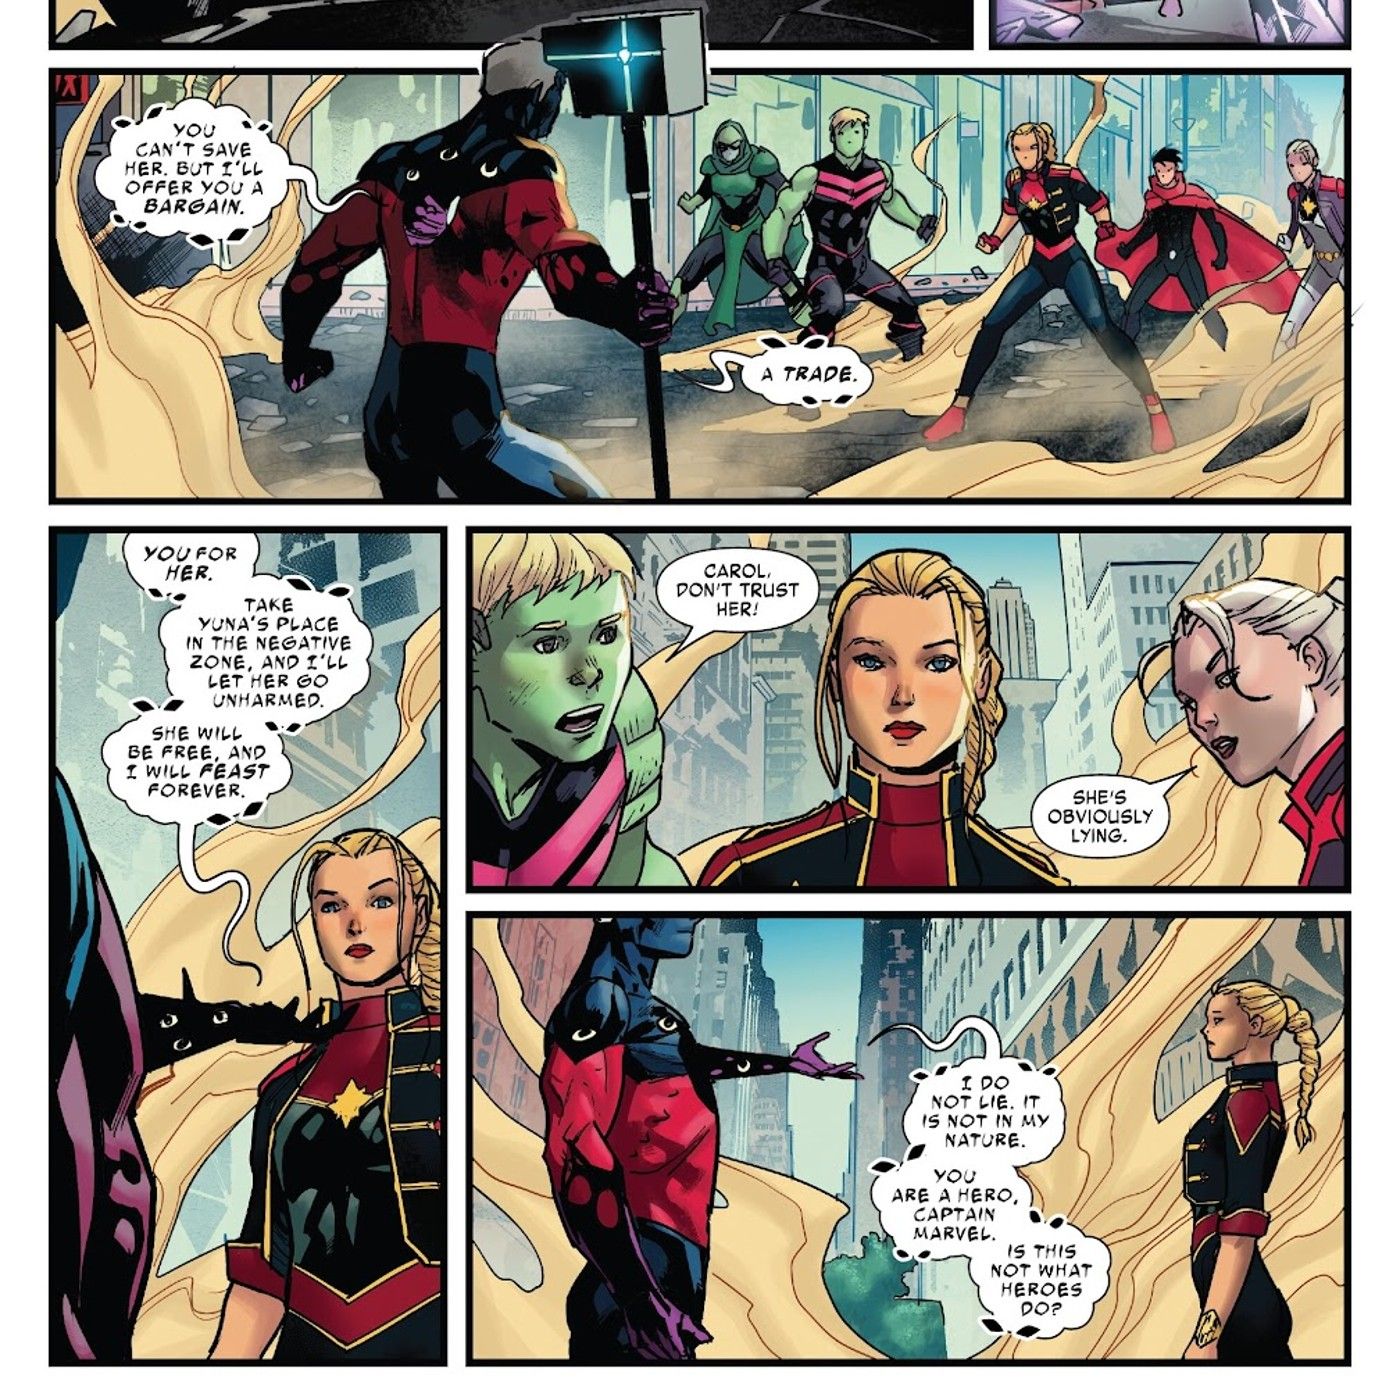 Captain Marvel Proves She’s Marvel’s Smartest Hero By Avoiding 1 Classic Supervillain Trick